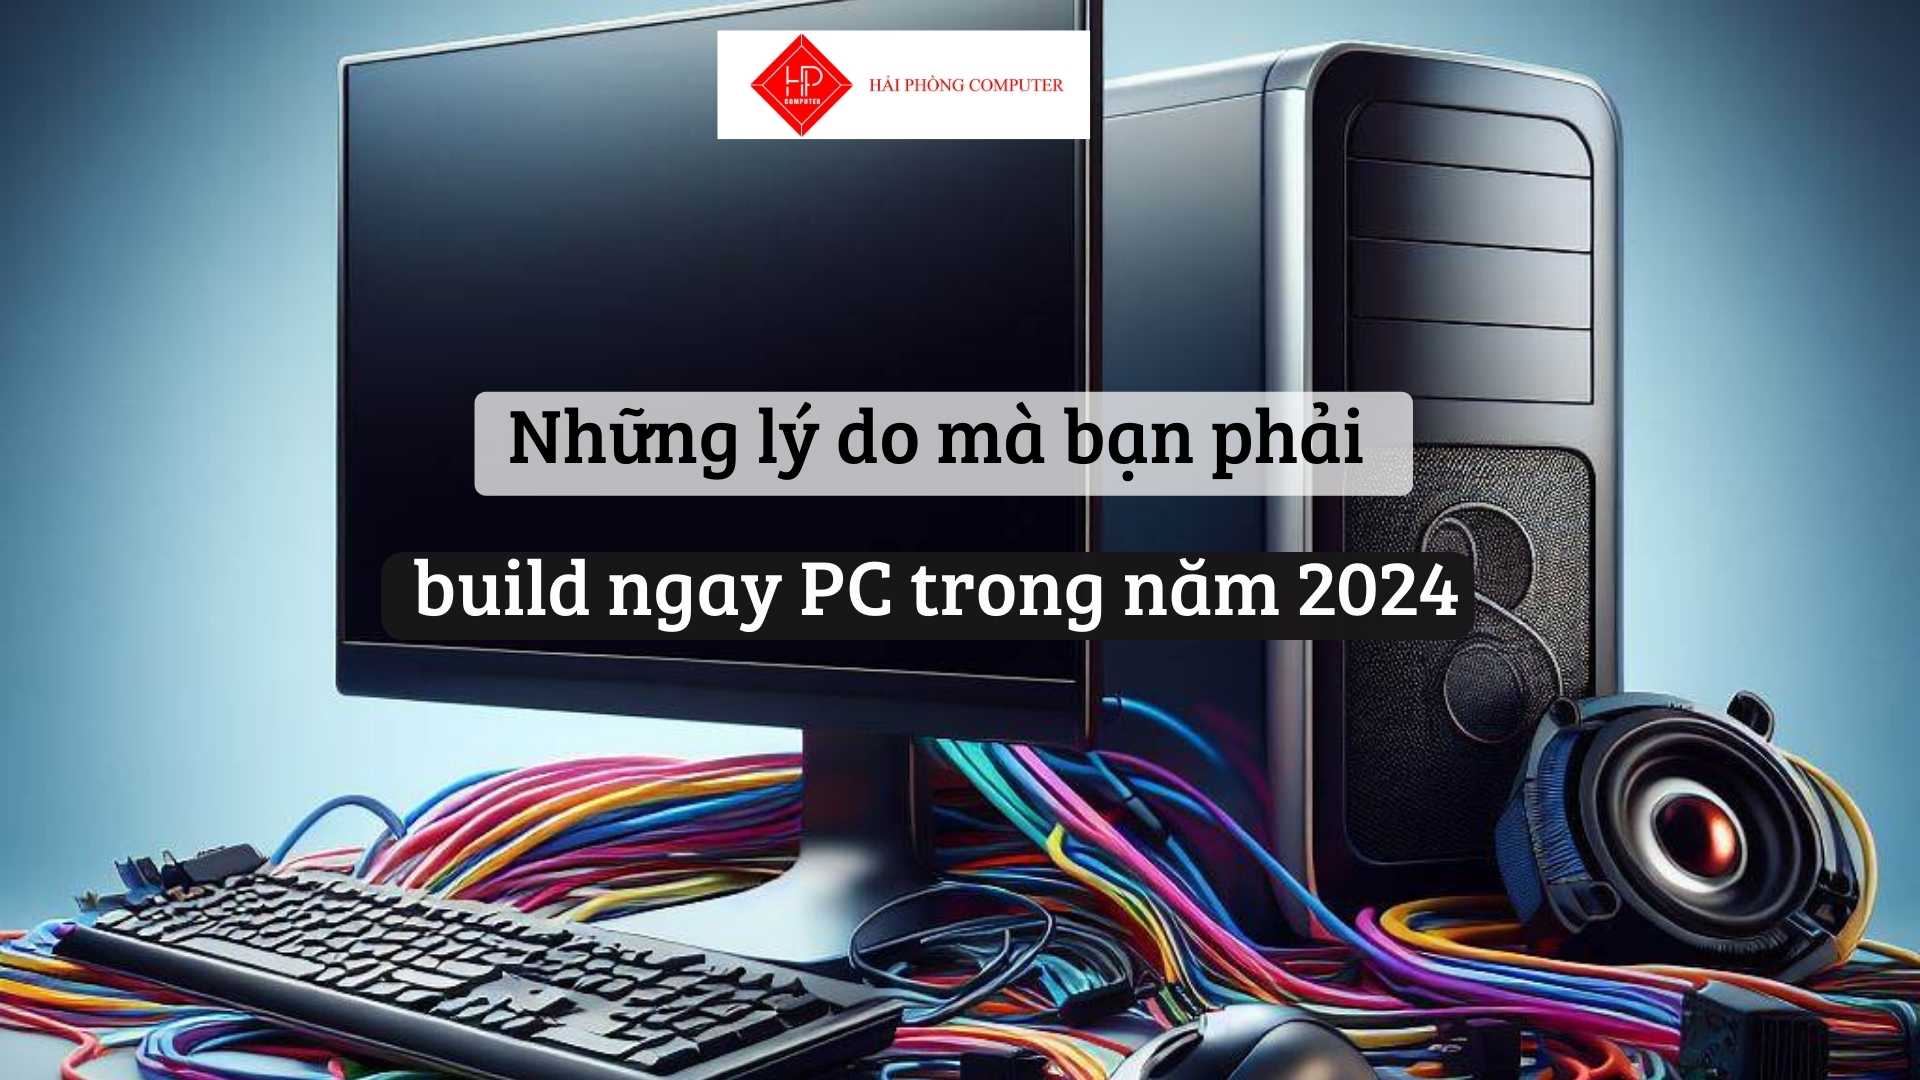 Những lý do mà bạn phải build ngay PC trong năm 2024